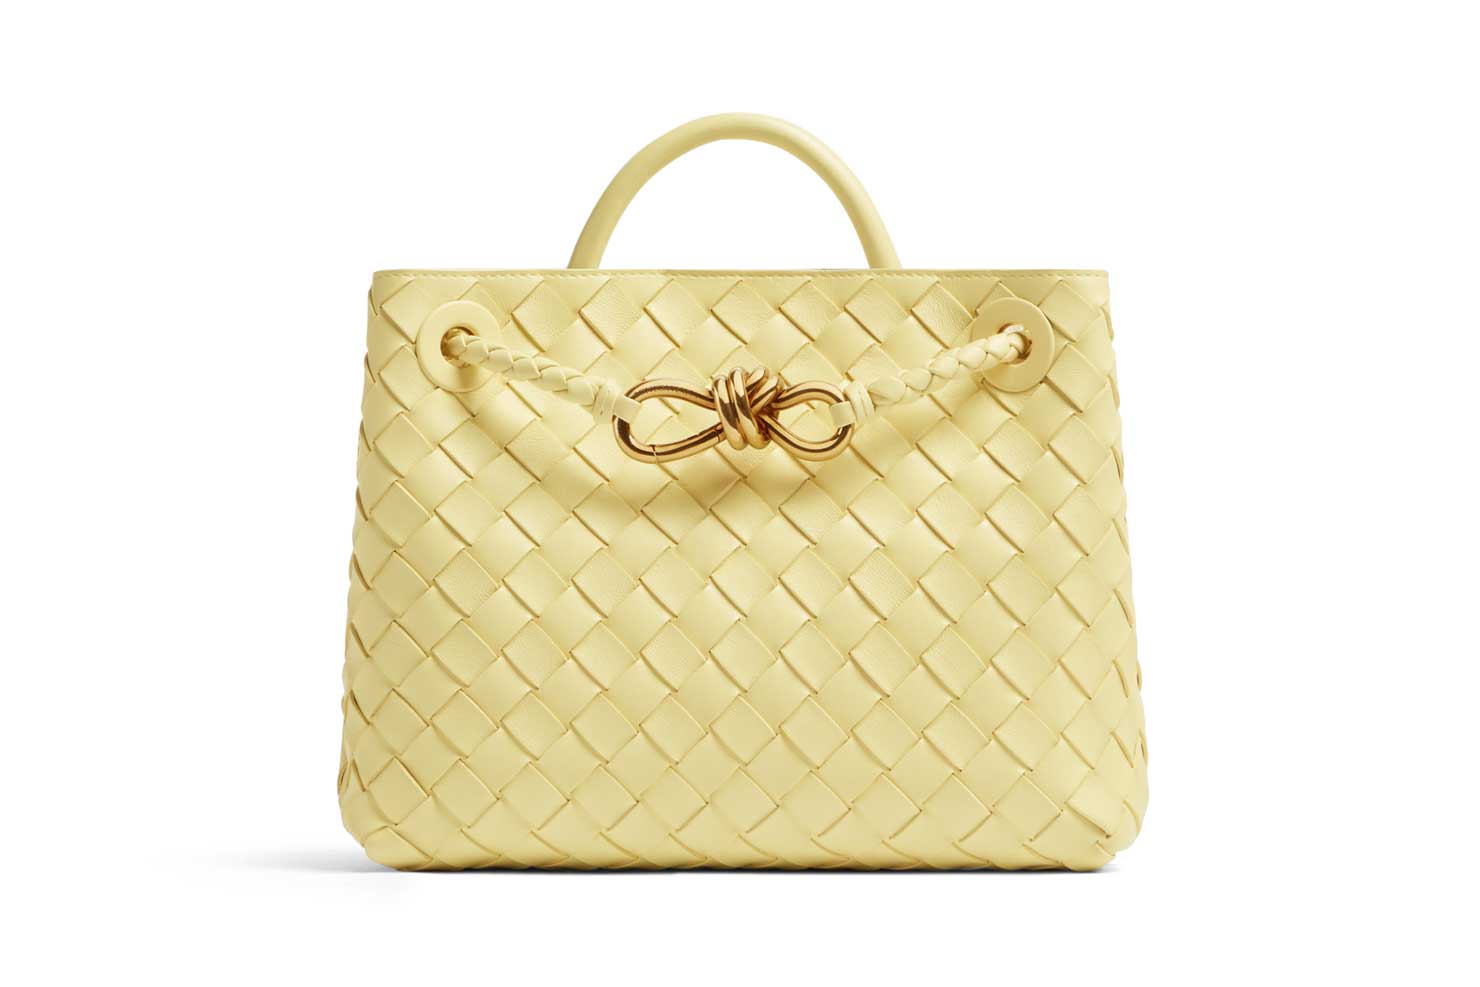 Bottega Veneta's Newest Bag by Matthieu Blazy? The Andiamo Bag - Let's Go  or No? 